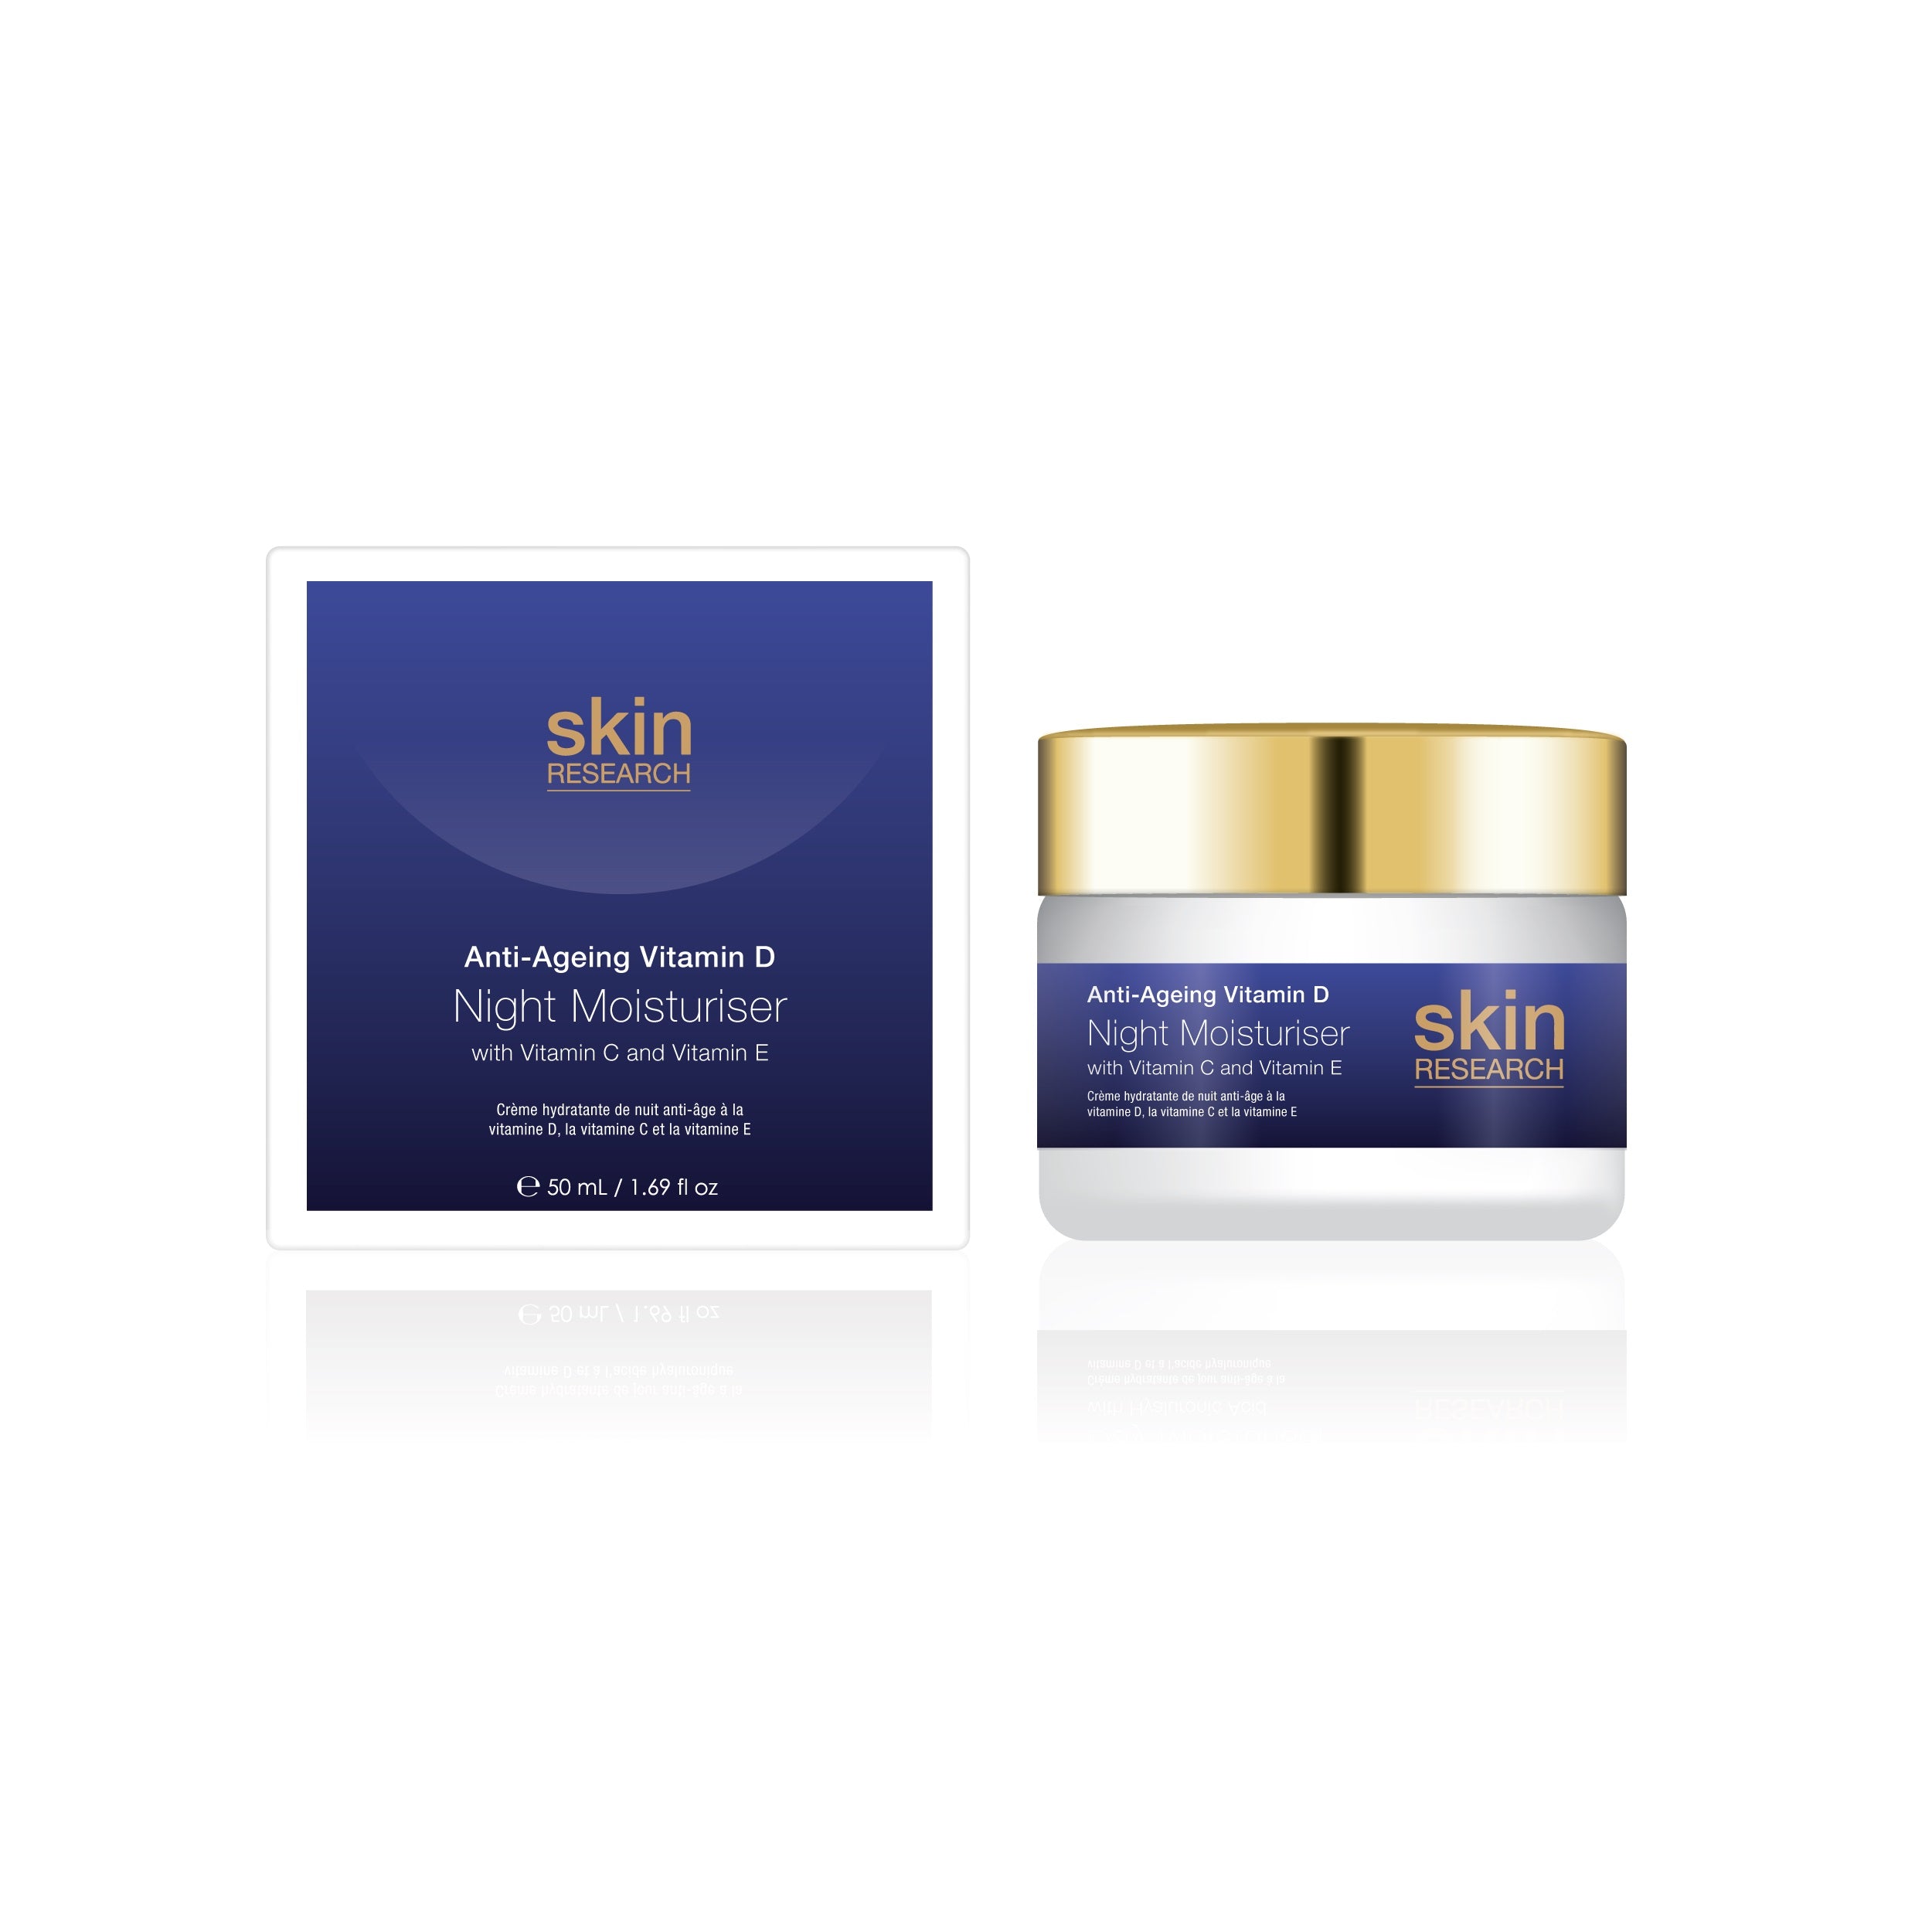 K3 Skin Research Crema hidratante de día antienvejecimiento con vitamina D y ácido hialurónico +.